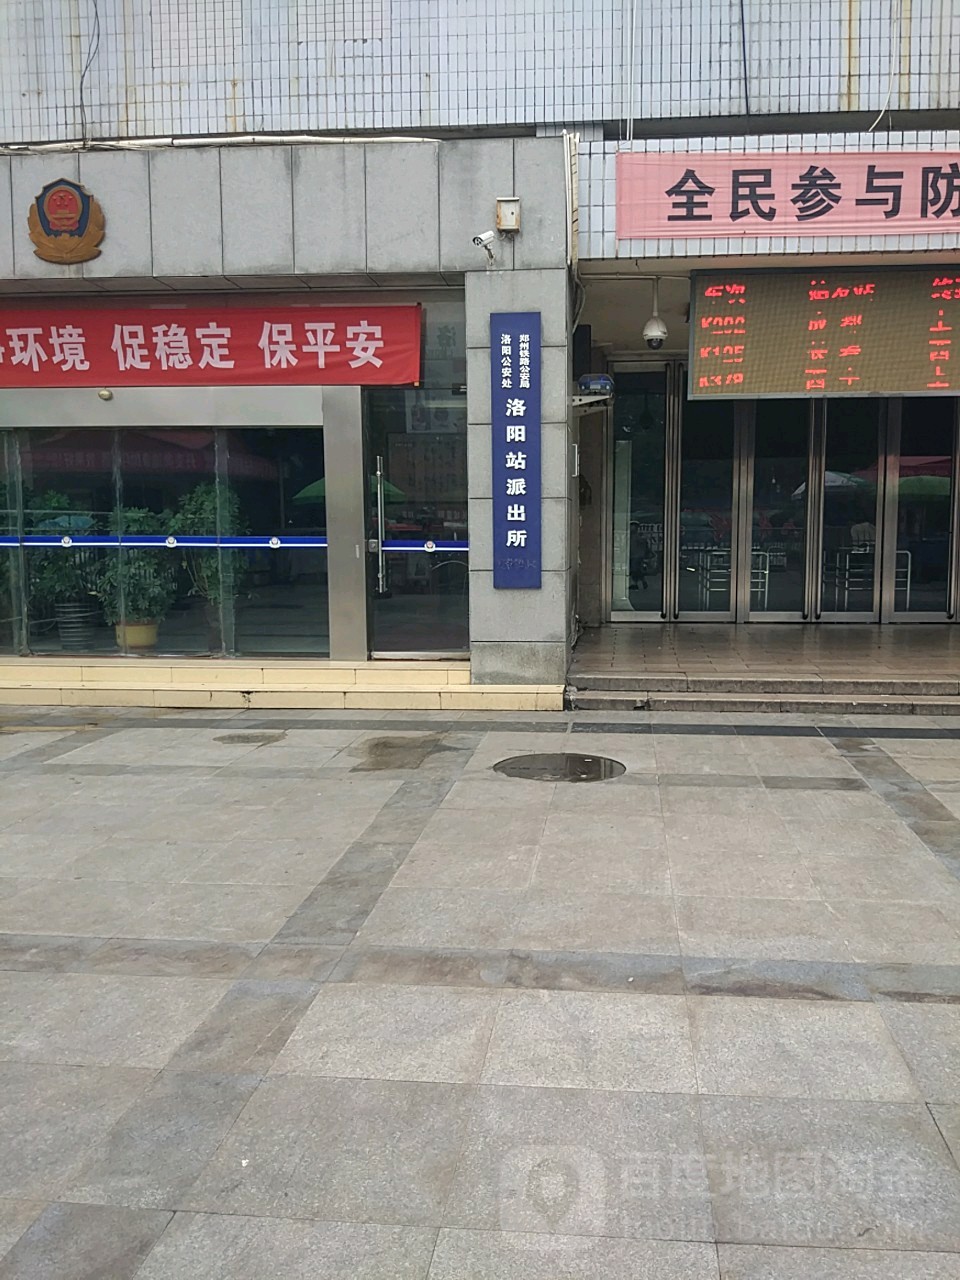 郑州铁路局公安局洛阳公安处洛阳车站派出所